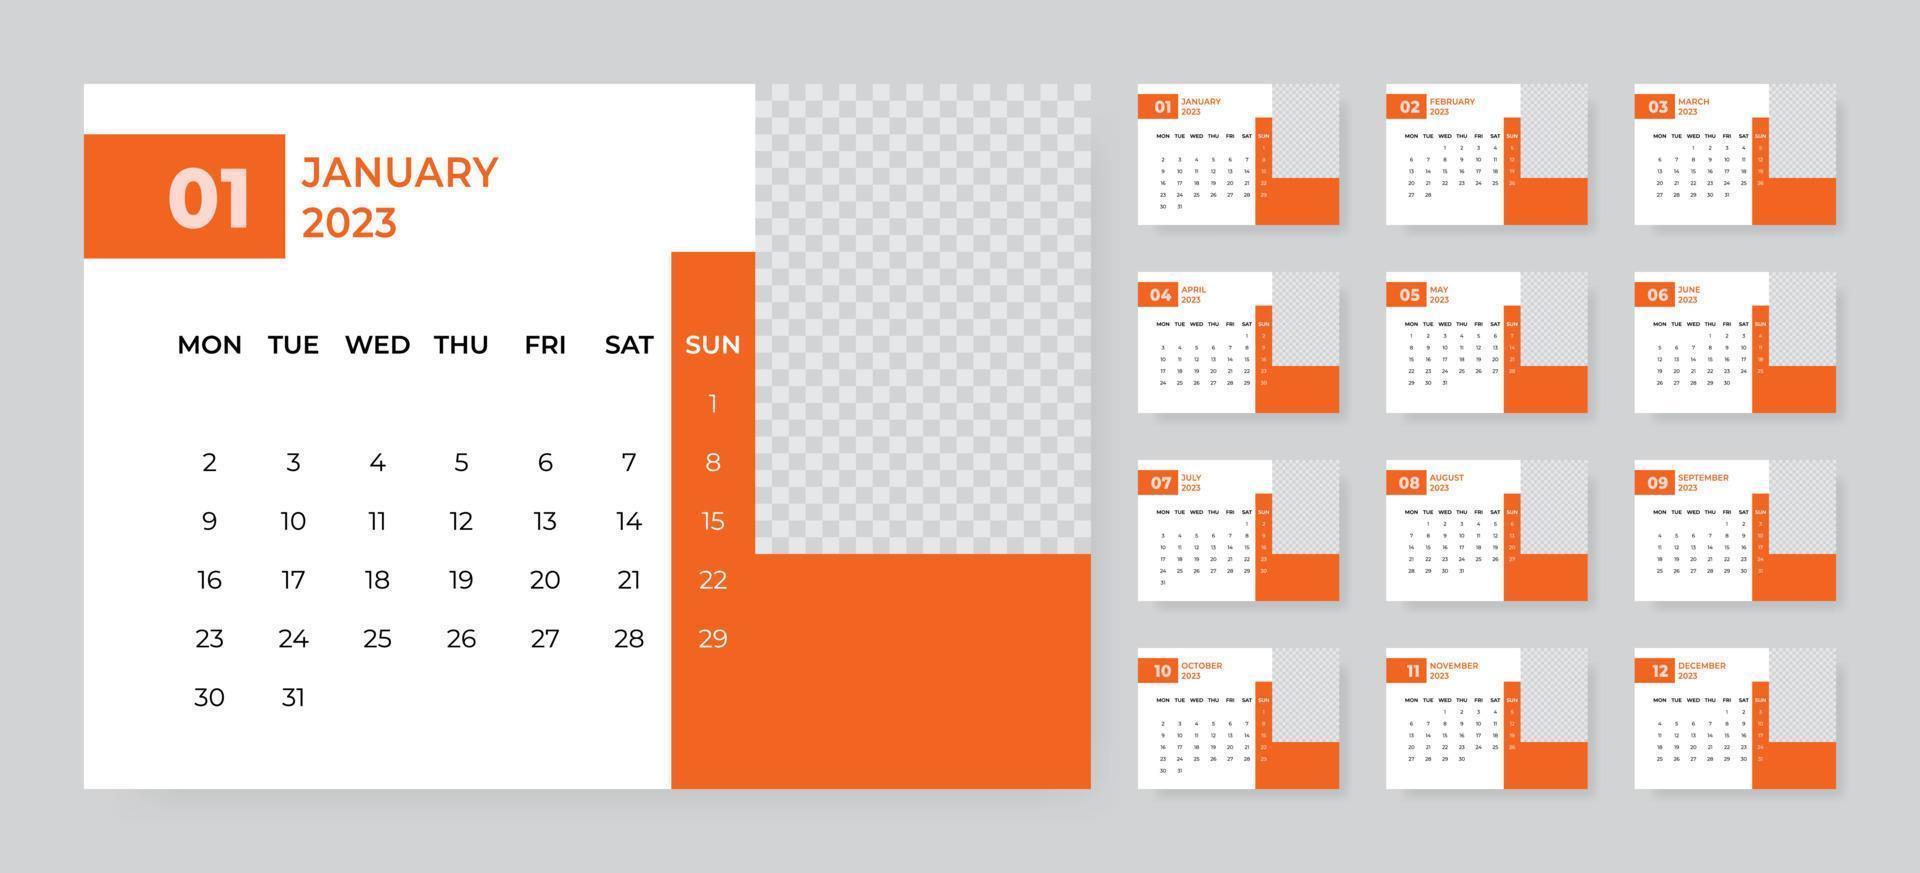 plantilla de calendario de escritorio mensual para el año 2023. la semana comienza el lunes vector